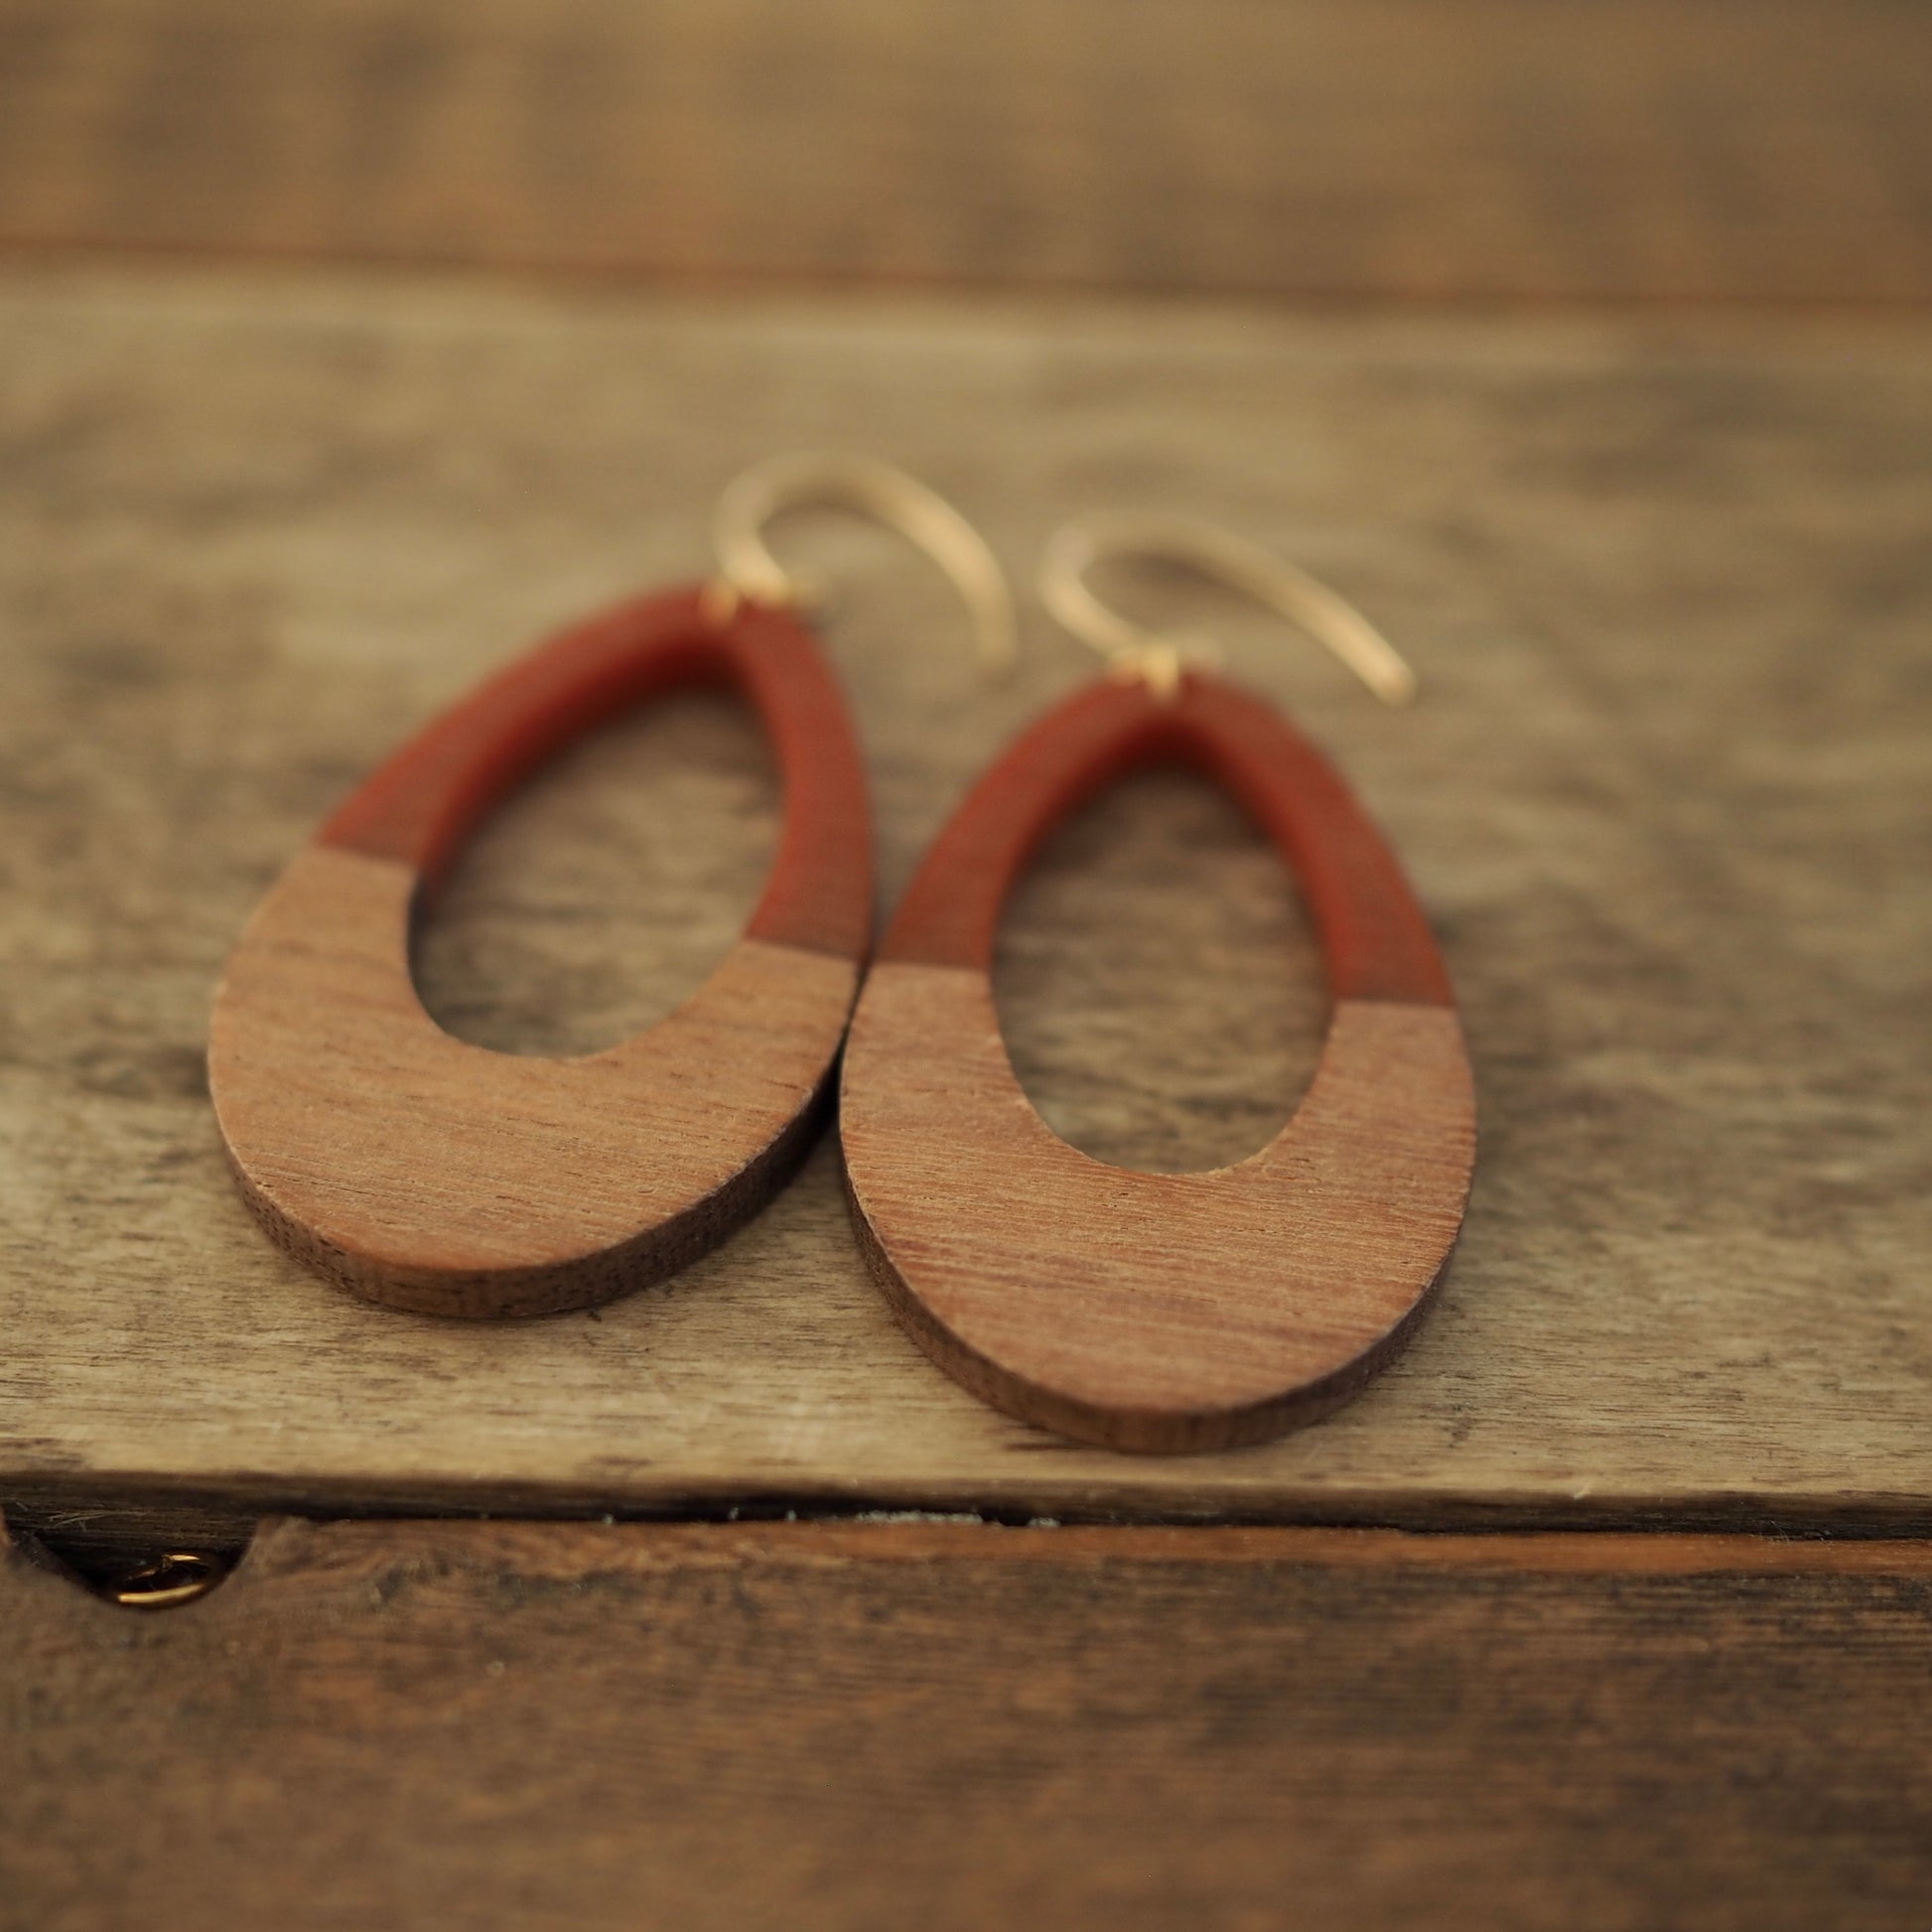 Teardrop earrings in Rust brown and wood by Wallis Designs